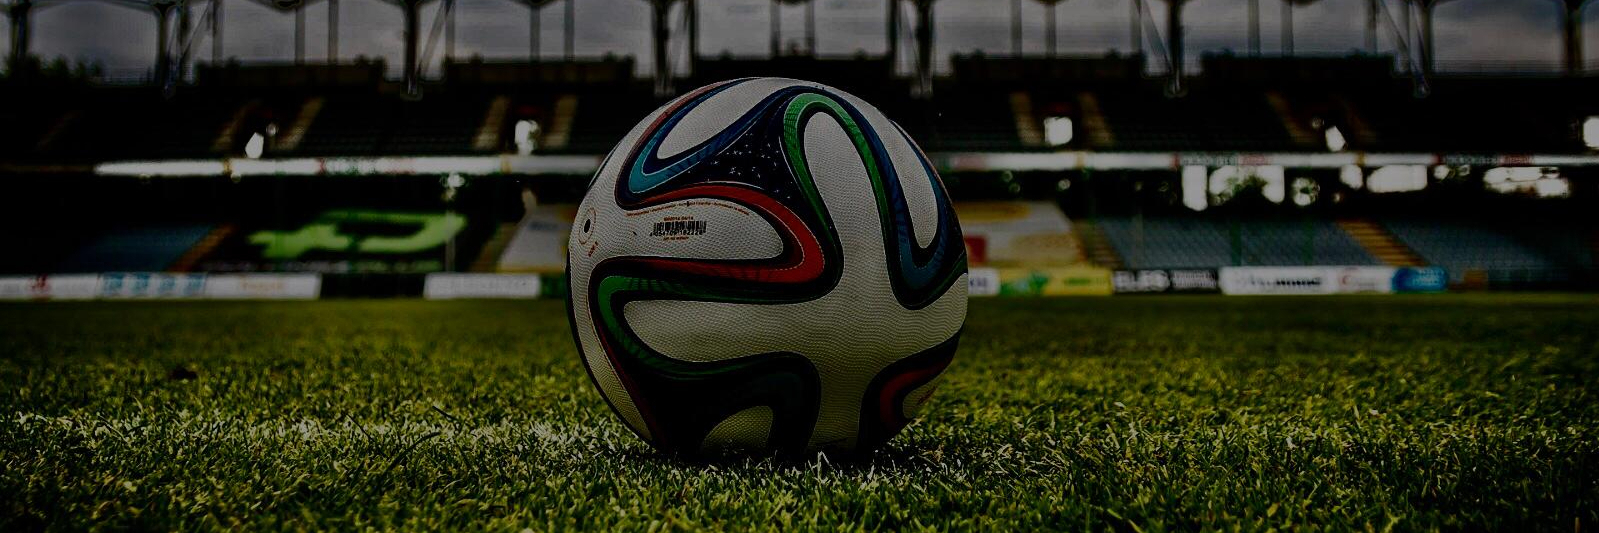 Giorgio Chiellini: l’addio al calcio giocato